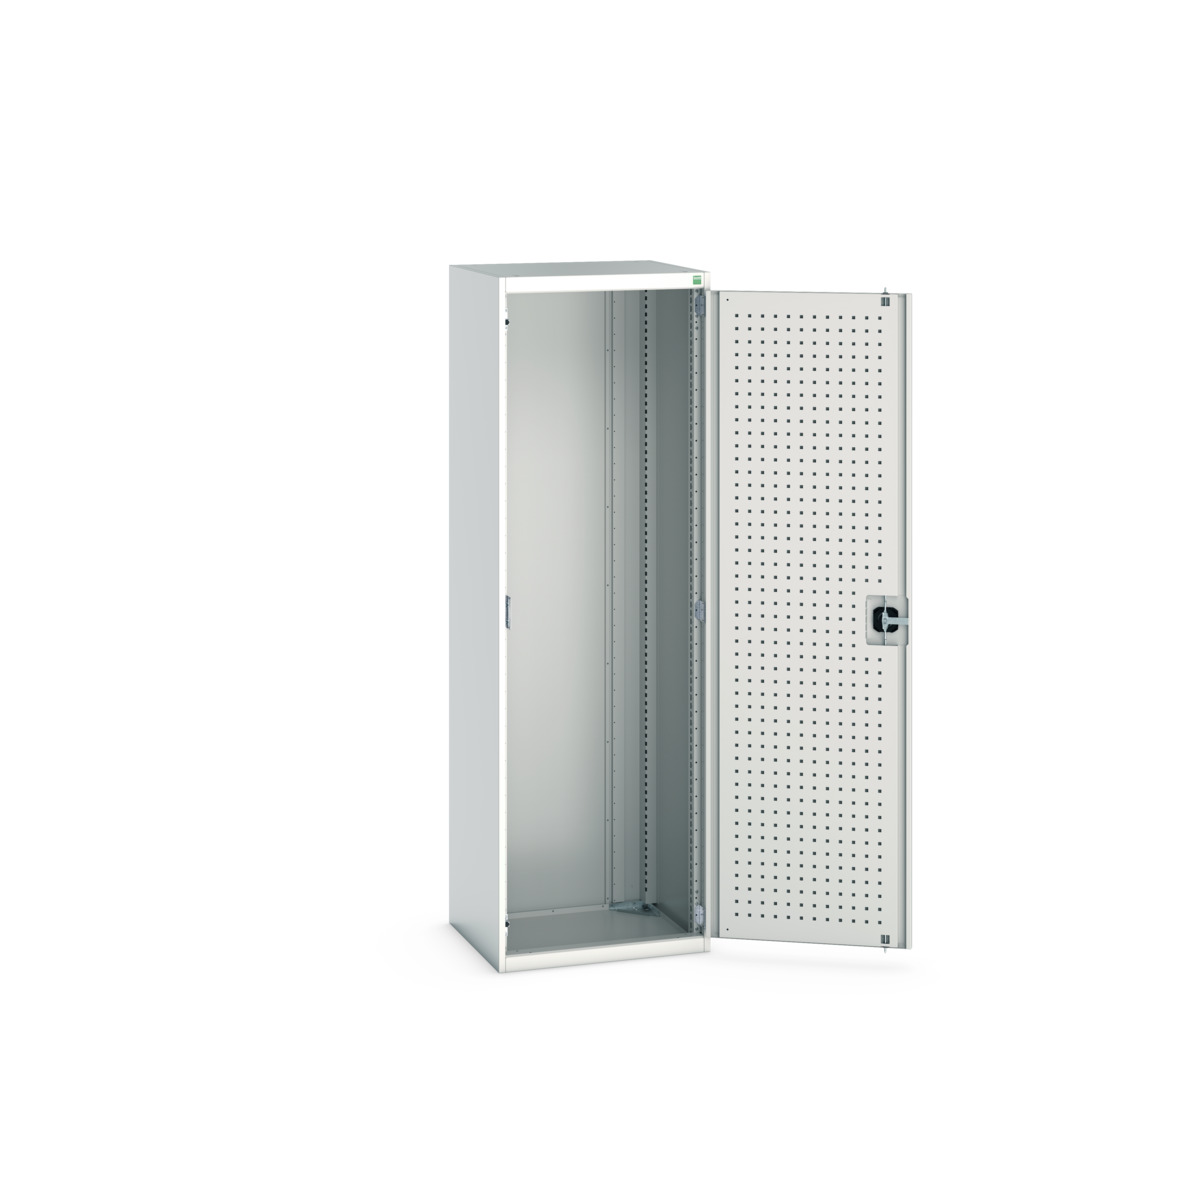 40011019.16V - cubio cupboard